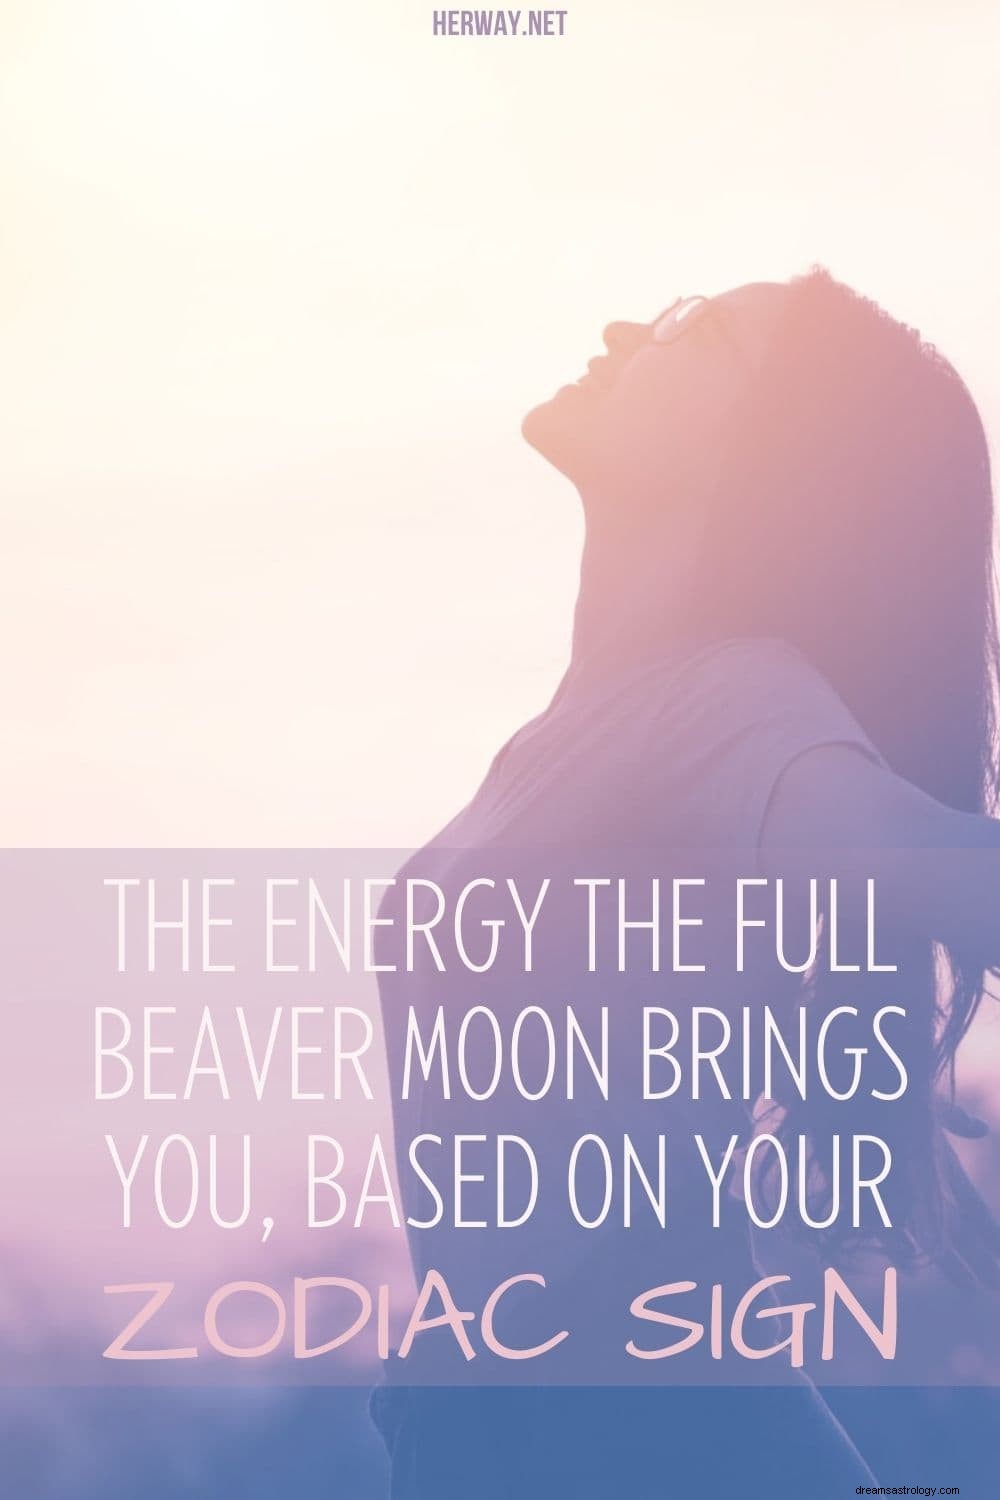 La energía que te brinda la luna llena del castor, según tu signo zodiacal